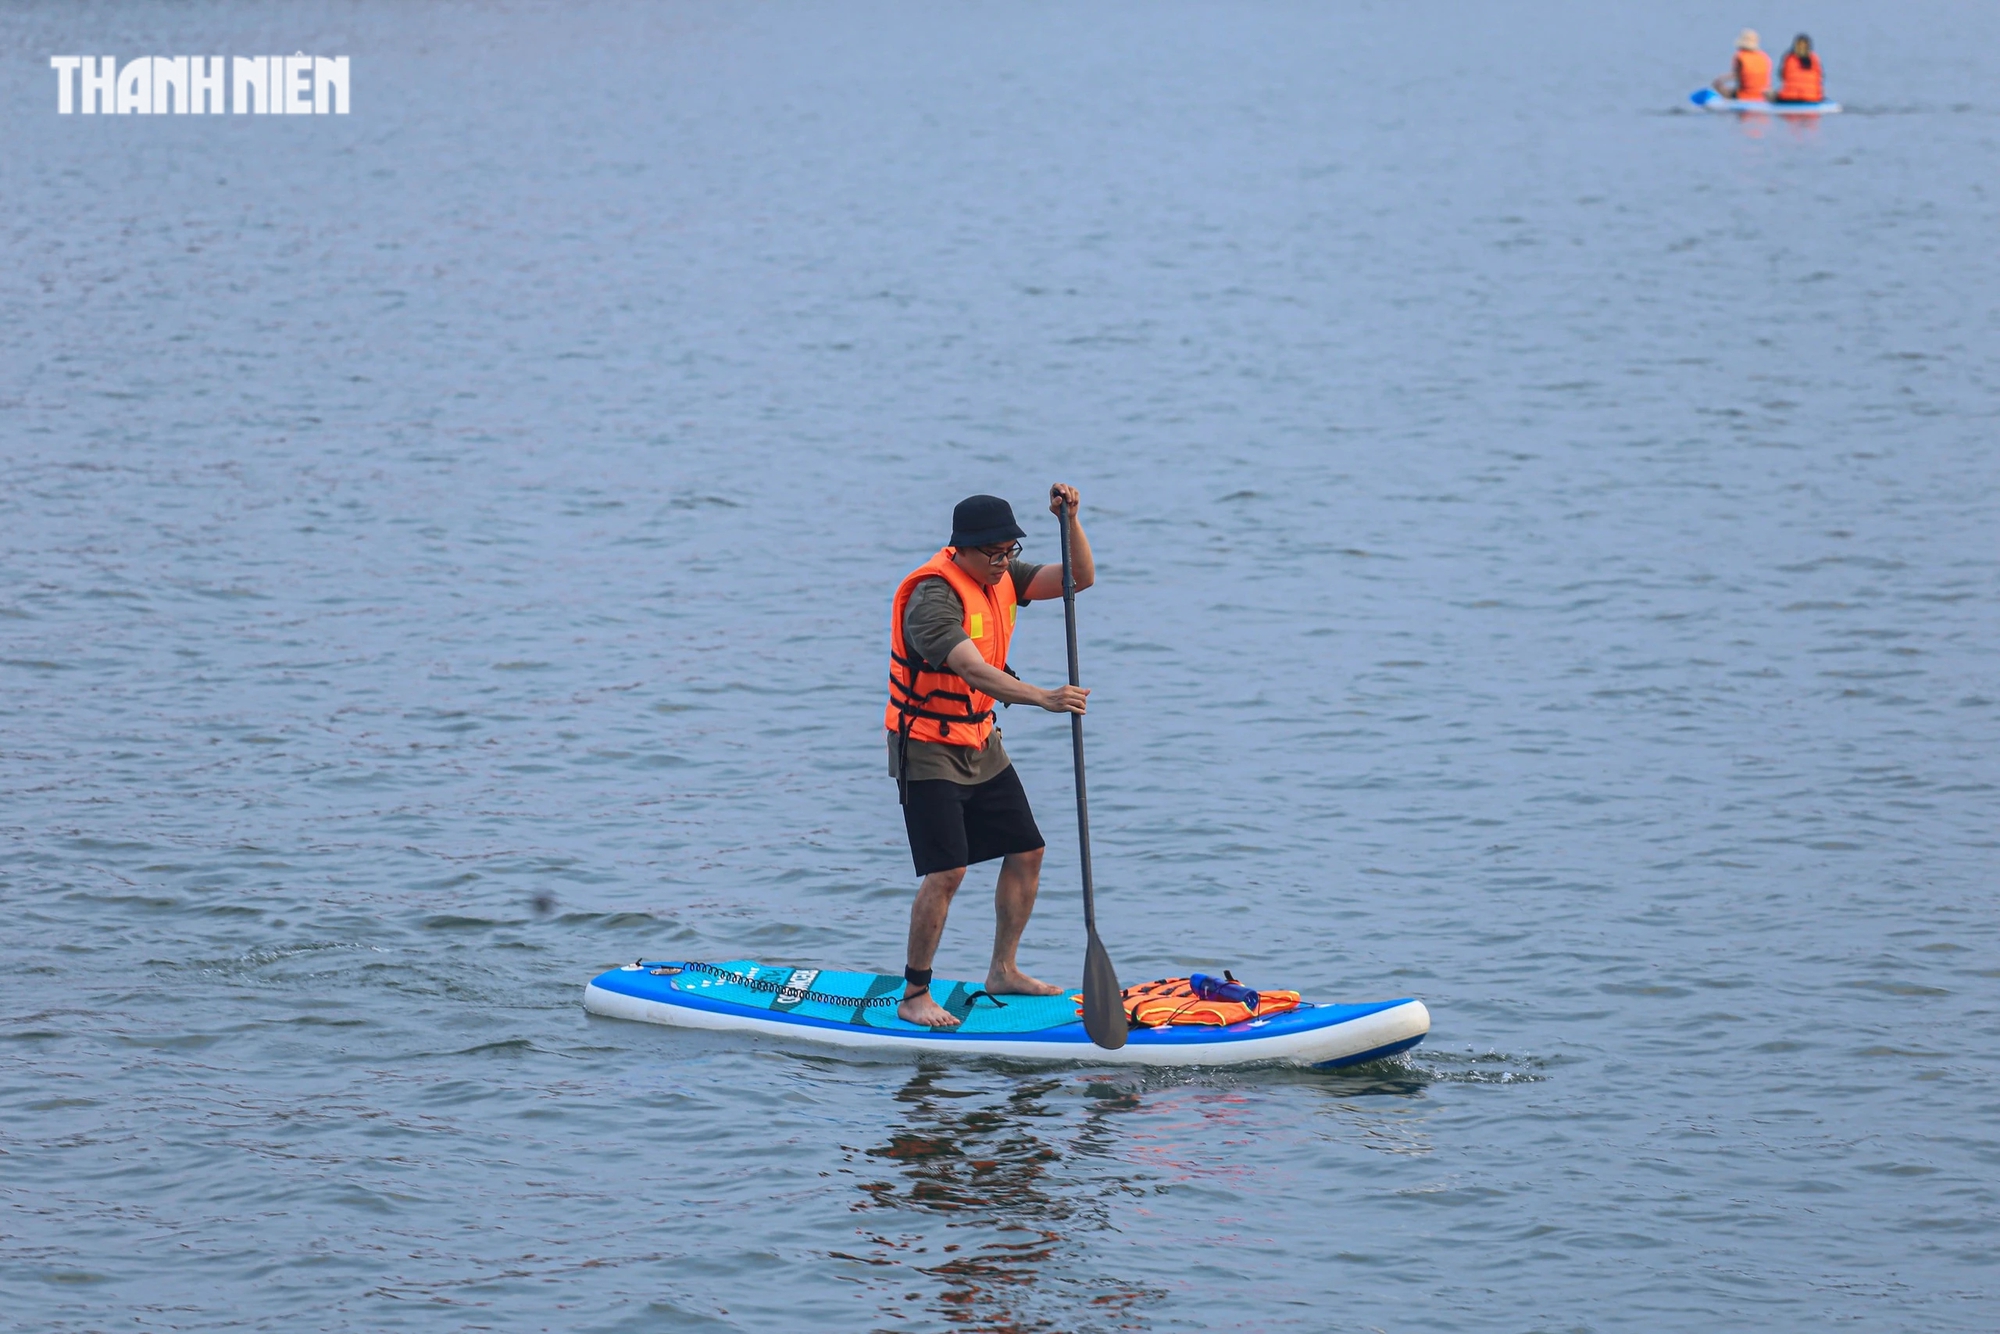 Ngoài tắm sông, chèo SUP trên sông Hương là một bộ môn rèn luyện sức khỏe